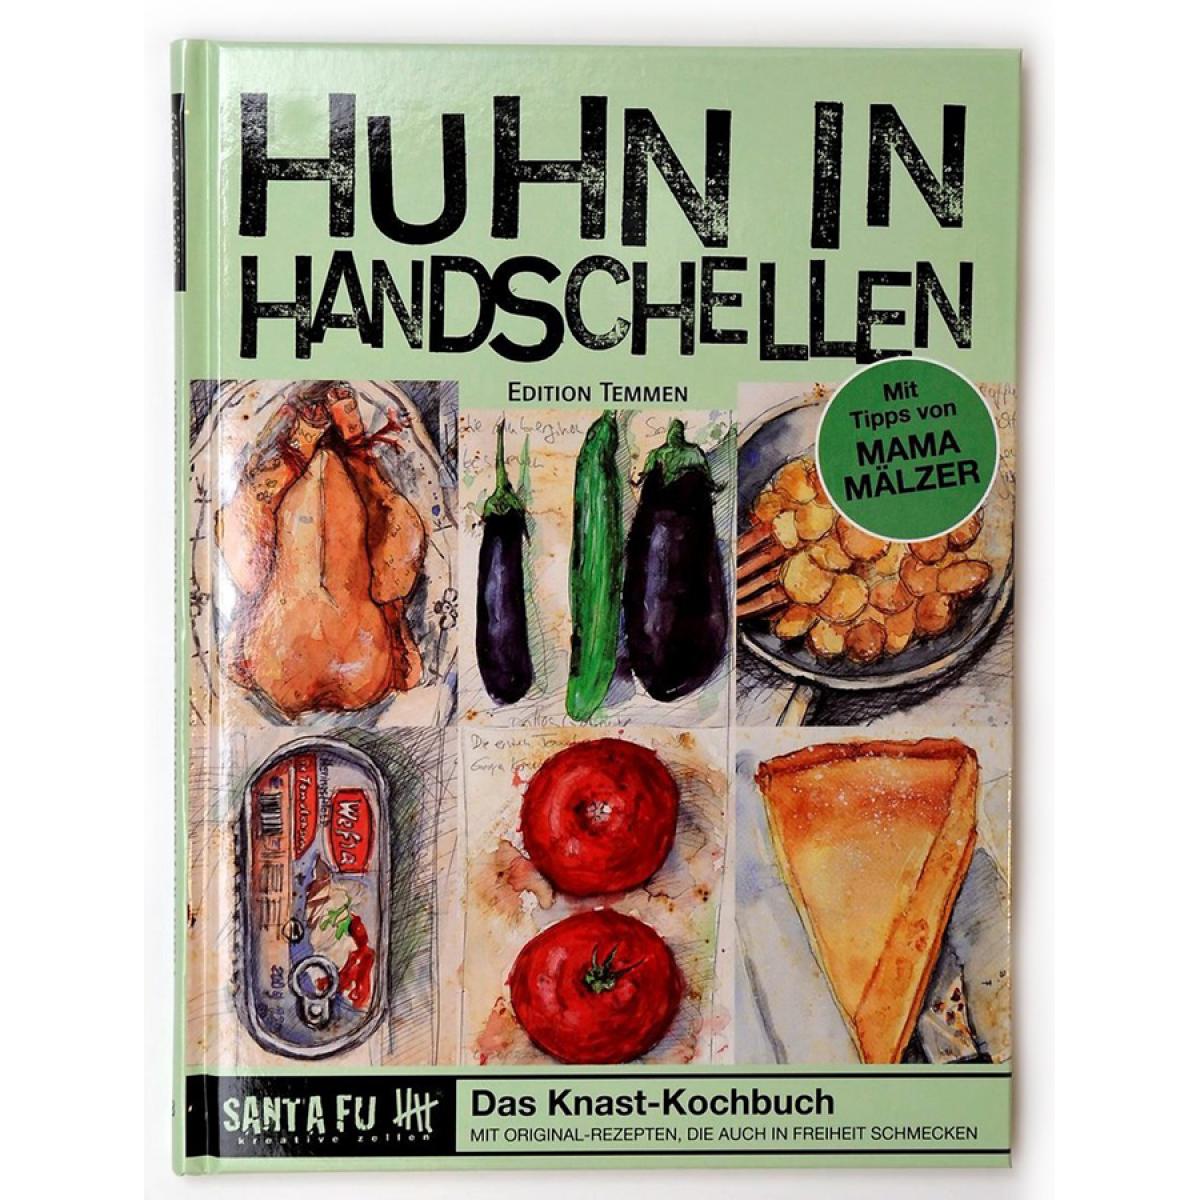 Das Knast-Kochbuch: Huhn in Handschellen